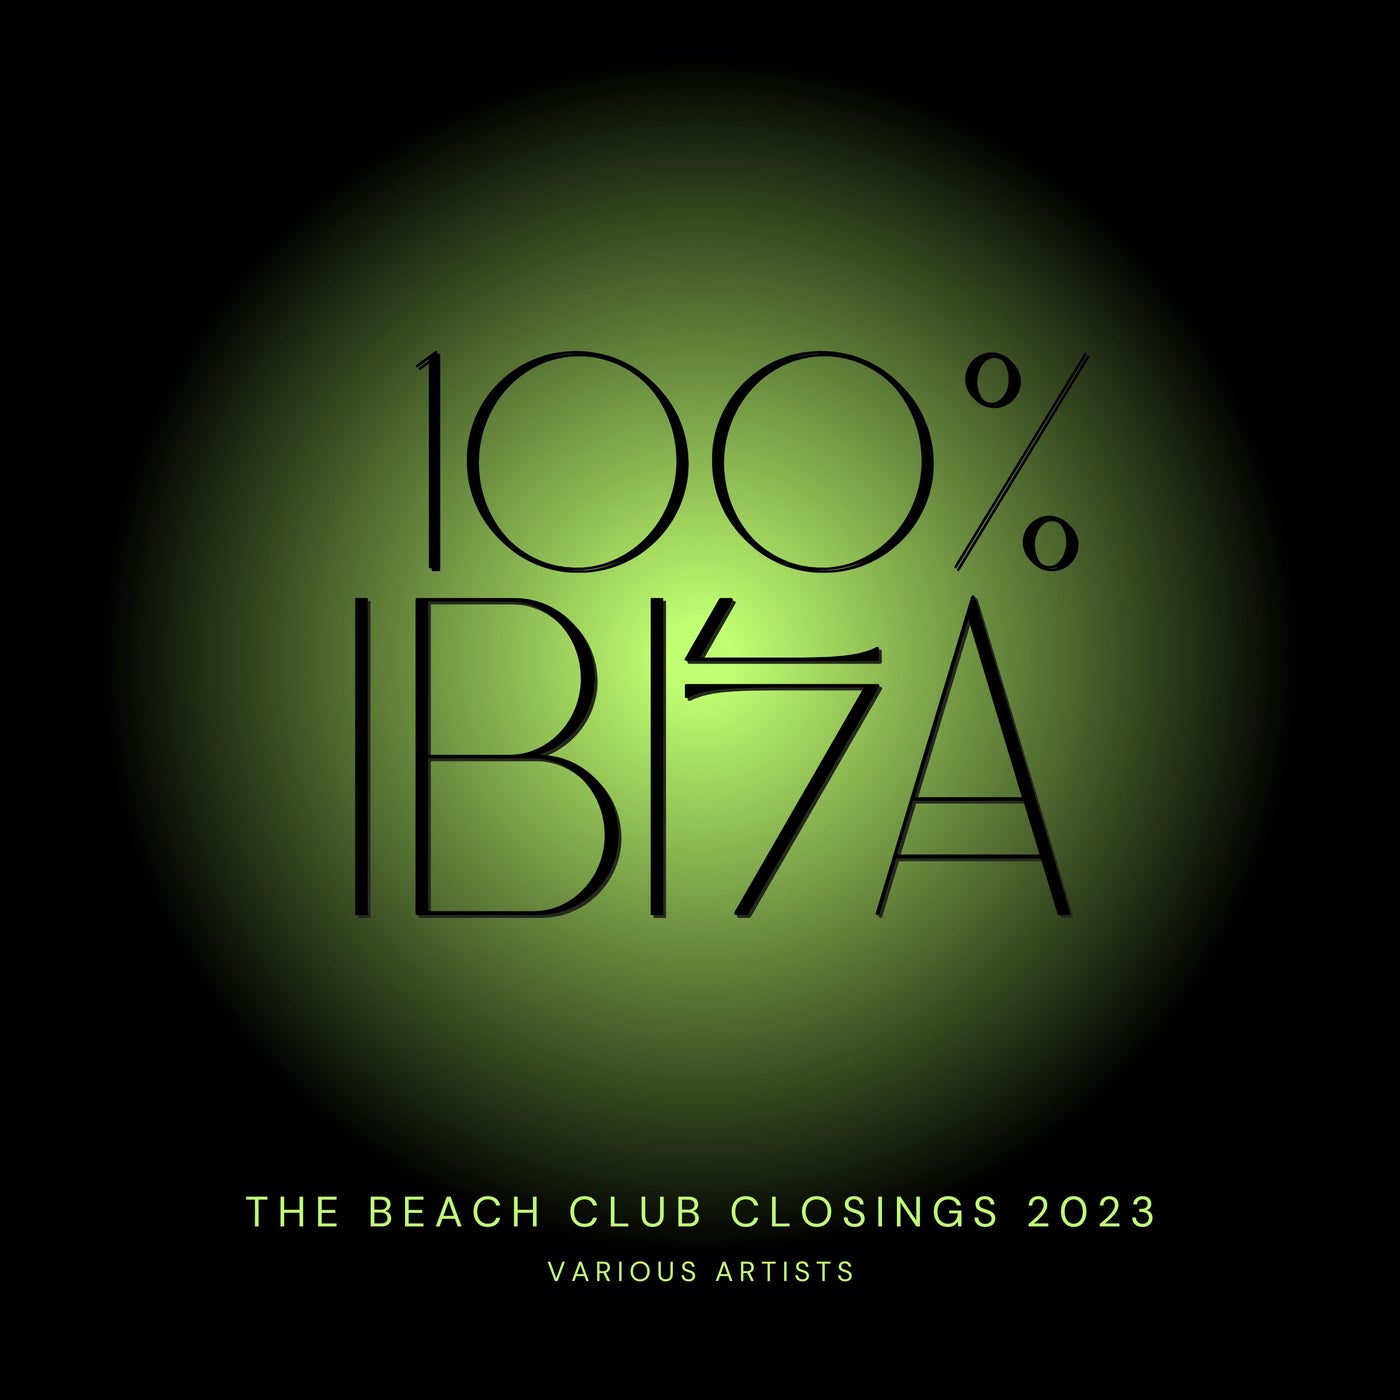 100%% Ibiza (The Beach Club Closings 2023)